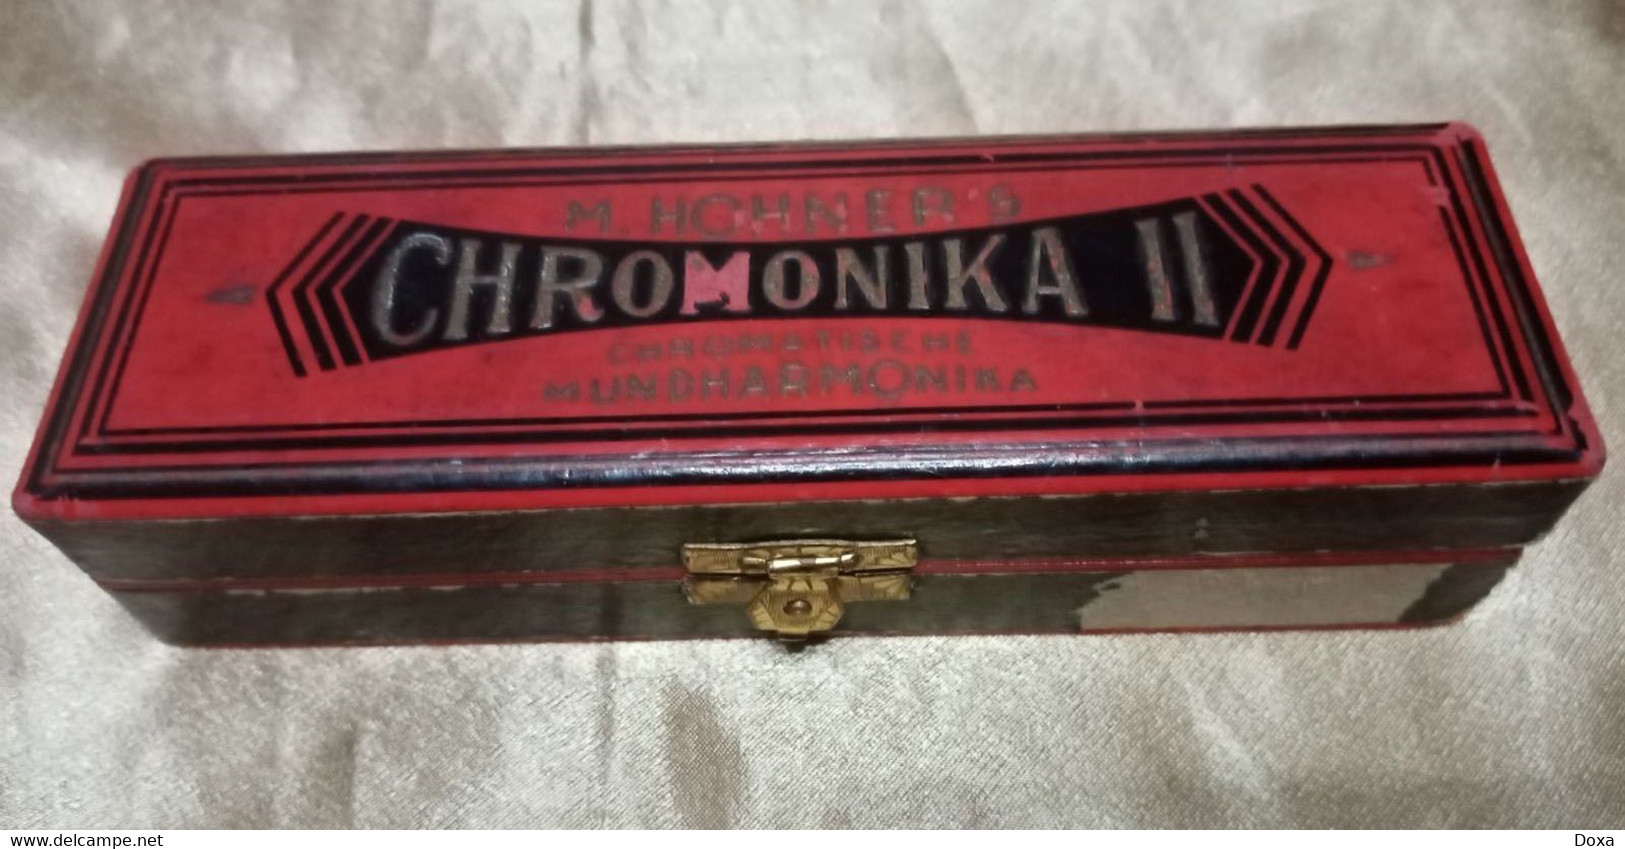 Harmonica Chromonica II Mundharmonika - Musikinstrumente